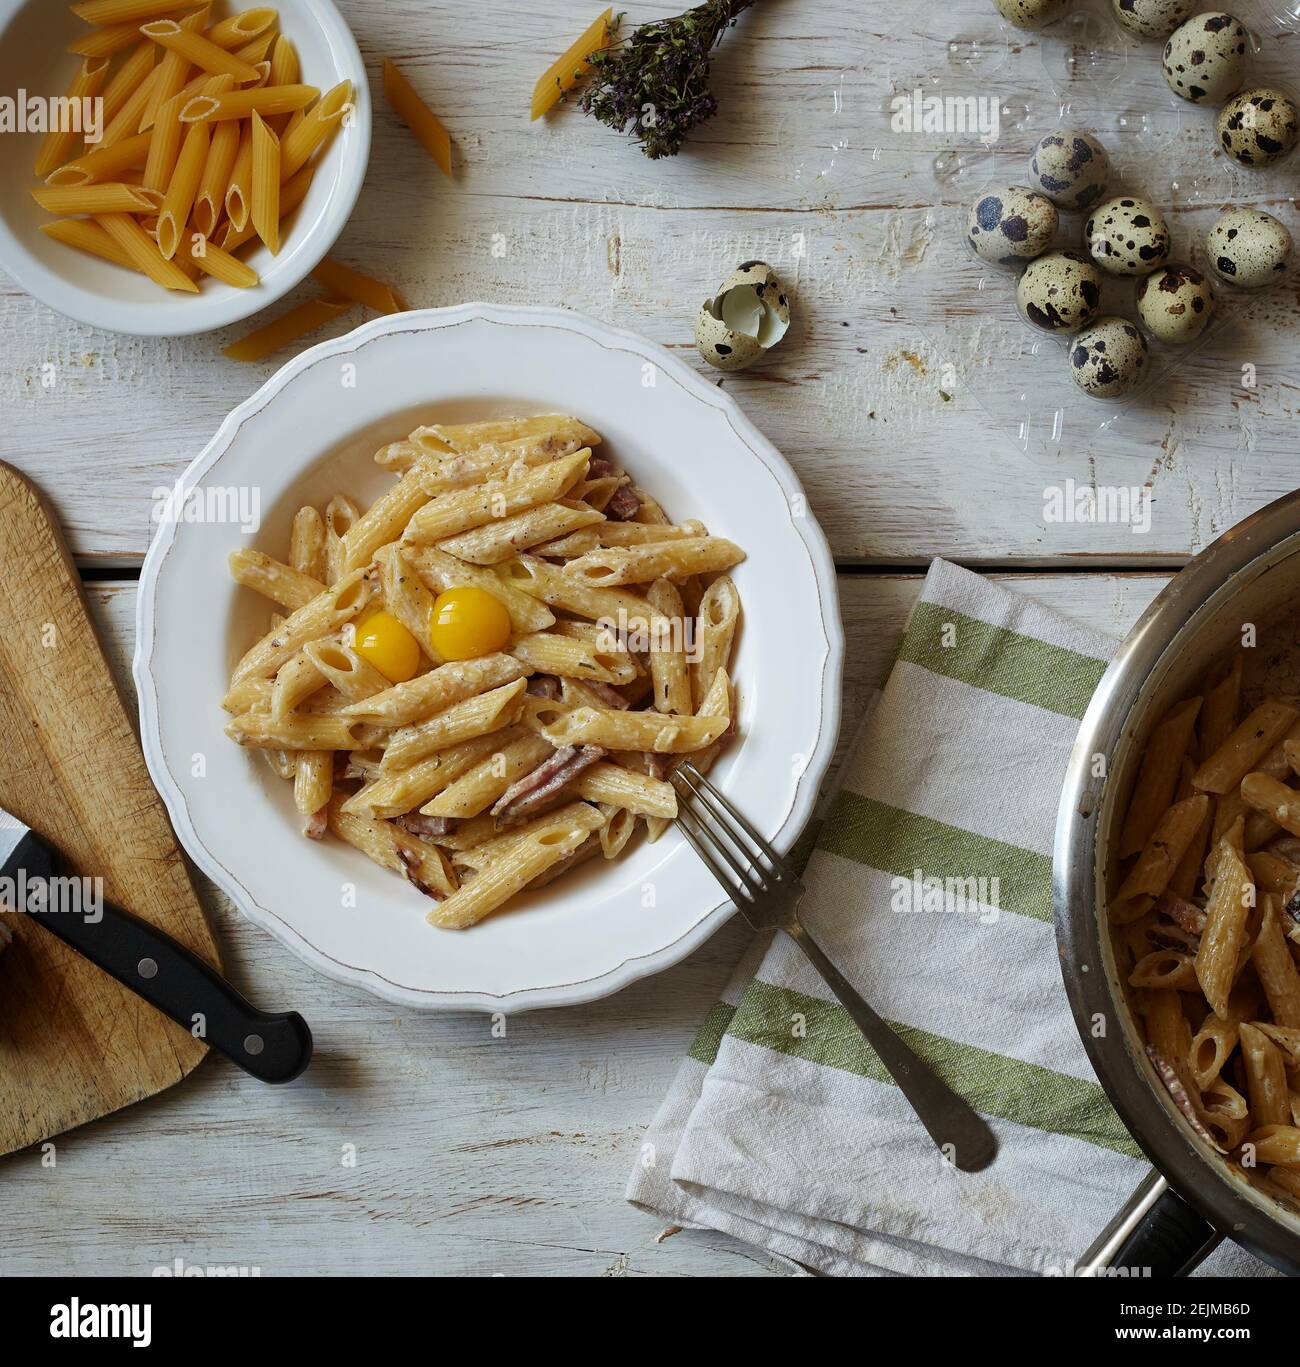 Spaghetti Carbonara, pâtes au bacon, œufs, parmesan dur et sauce à la crème. Pâtes italiennes traditionnelles alla carbonara sur blanc, vue de dessus avec ING Banque D'Images